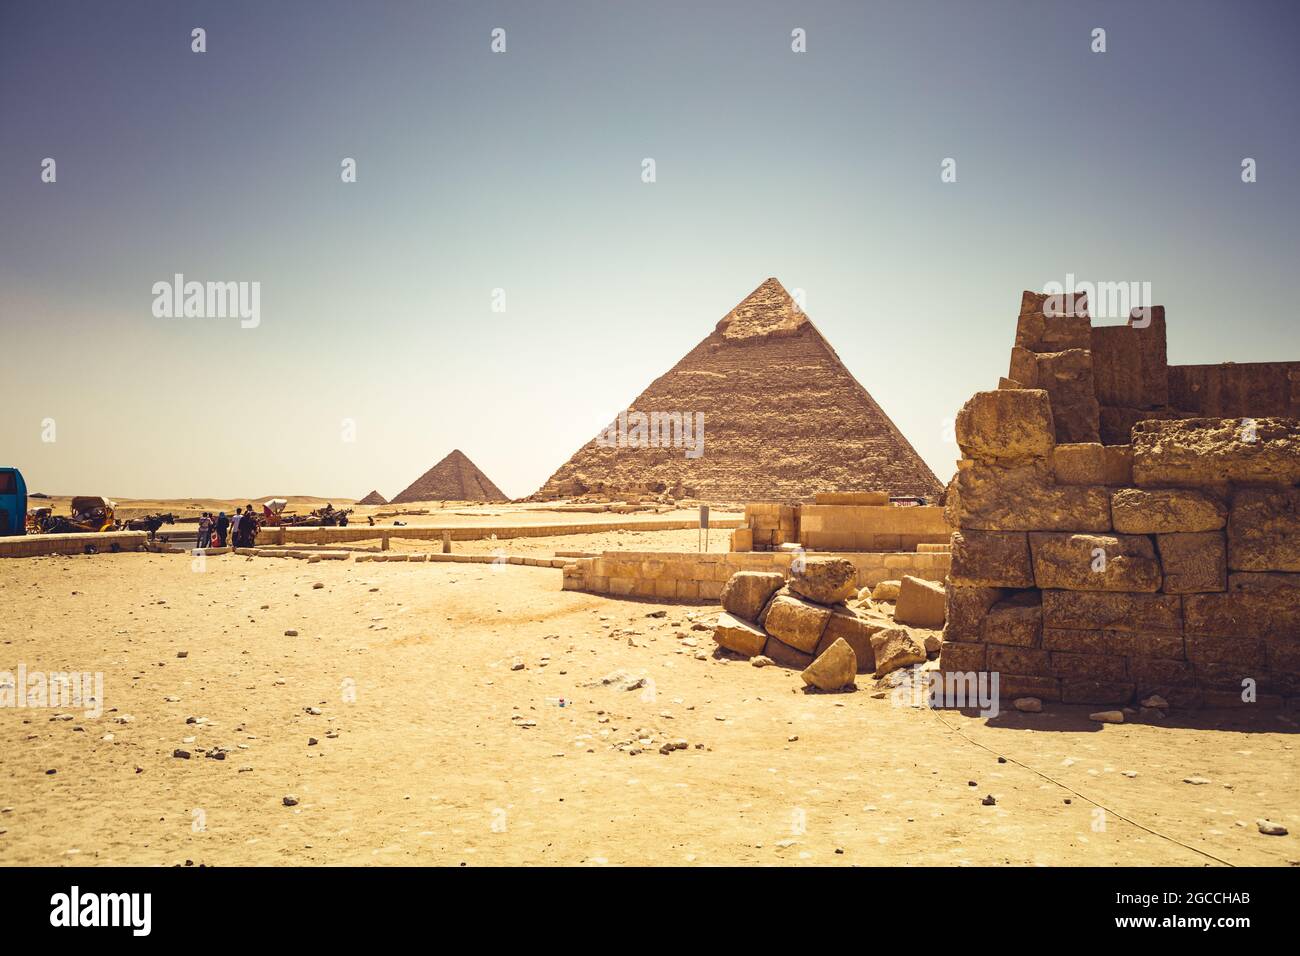 Pyramids of Giza Egypt Stock Photo